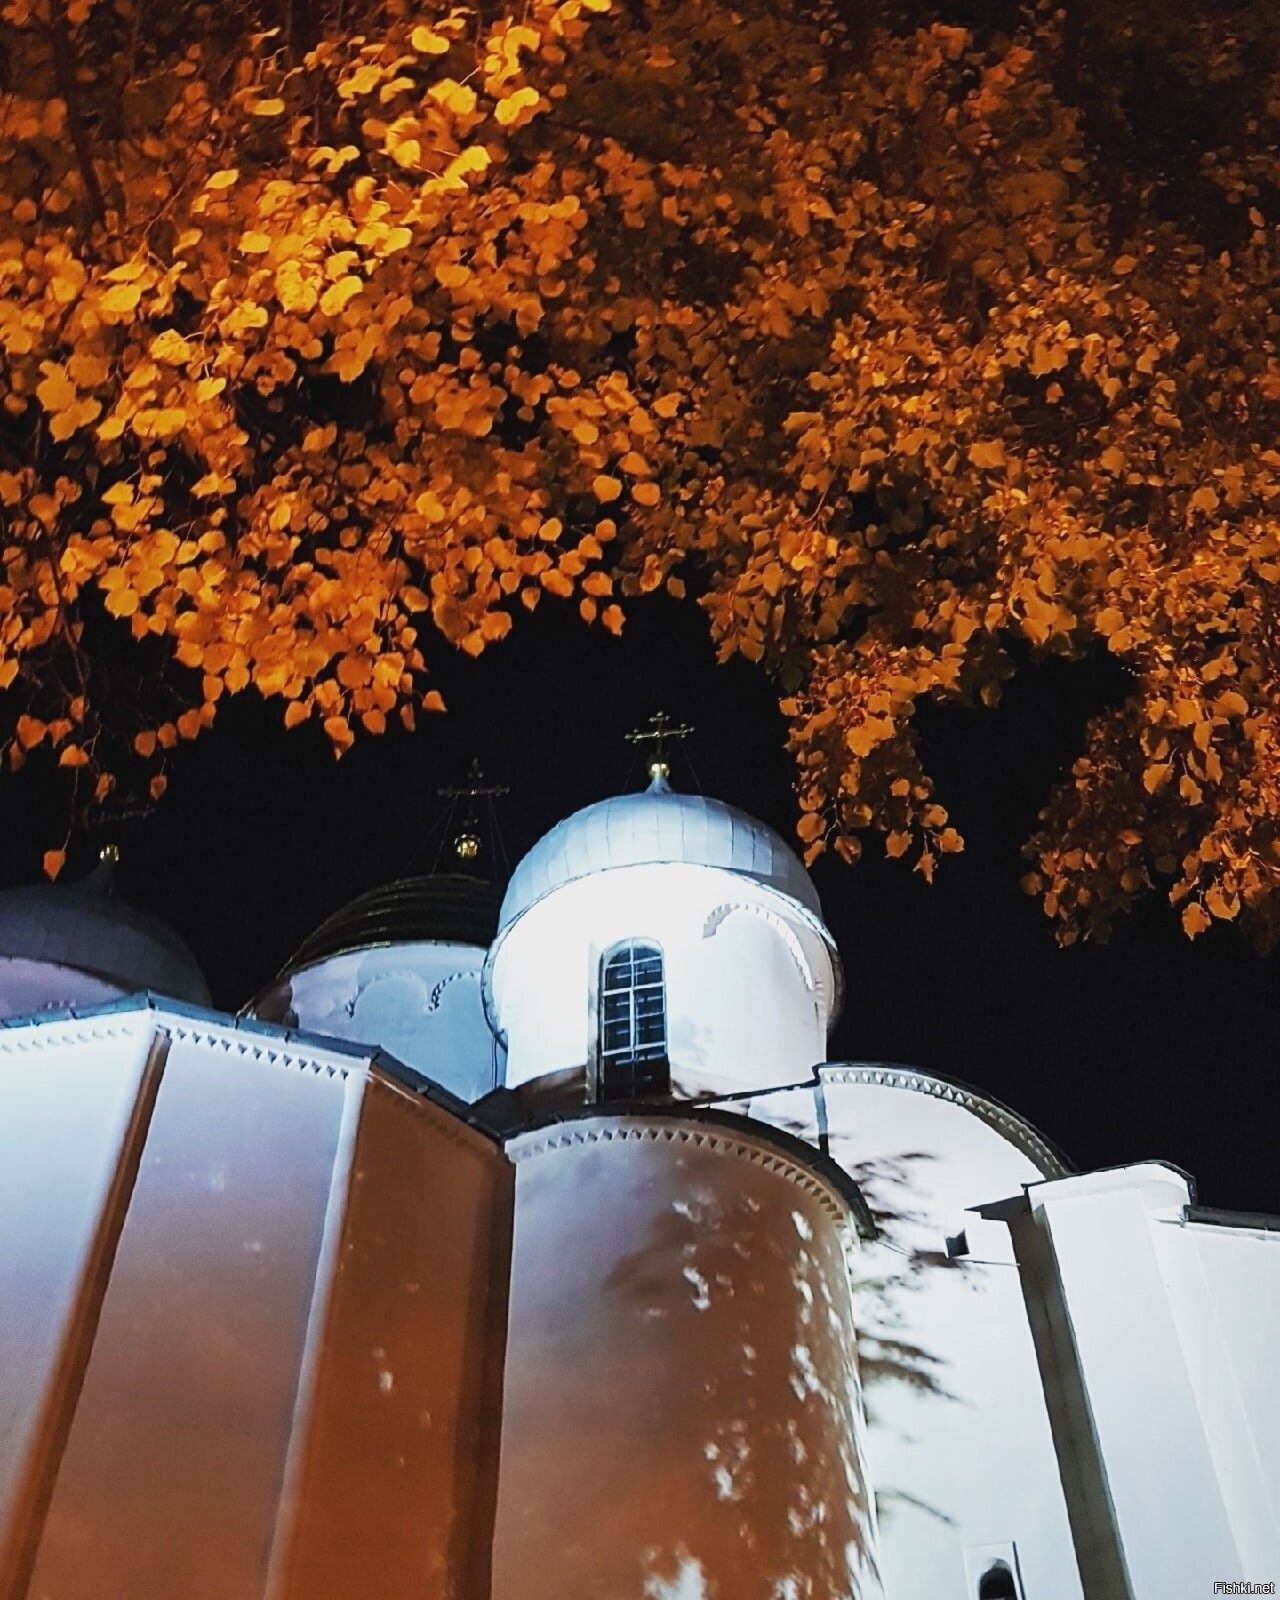 фото великого новгорода ночью